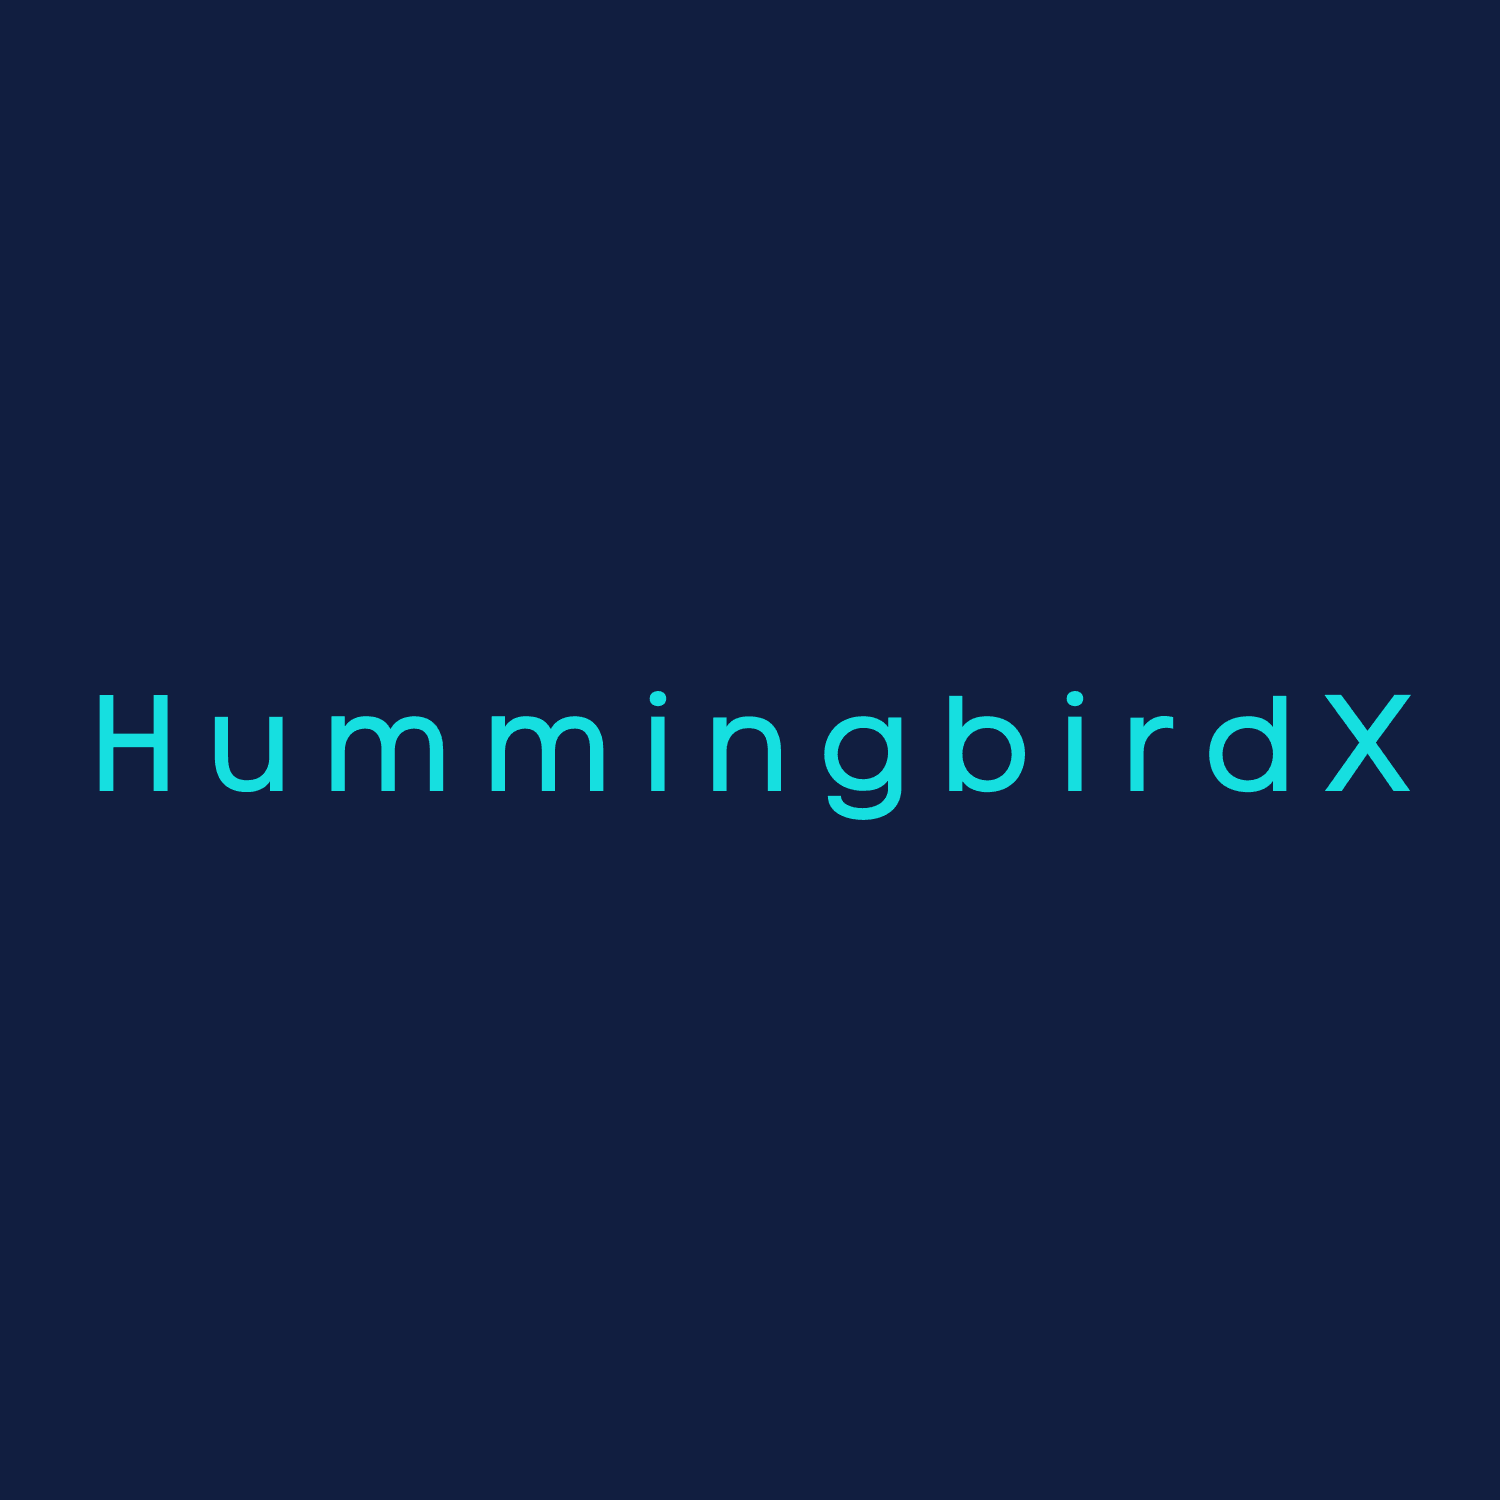 HummingbirdX 横幅